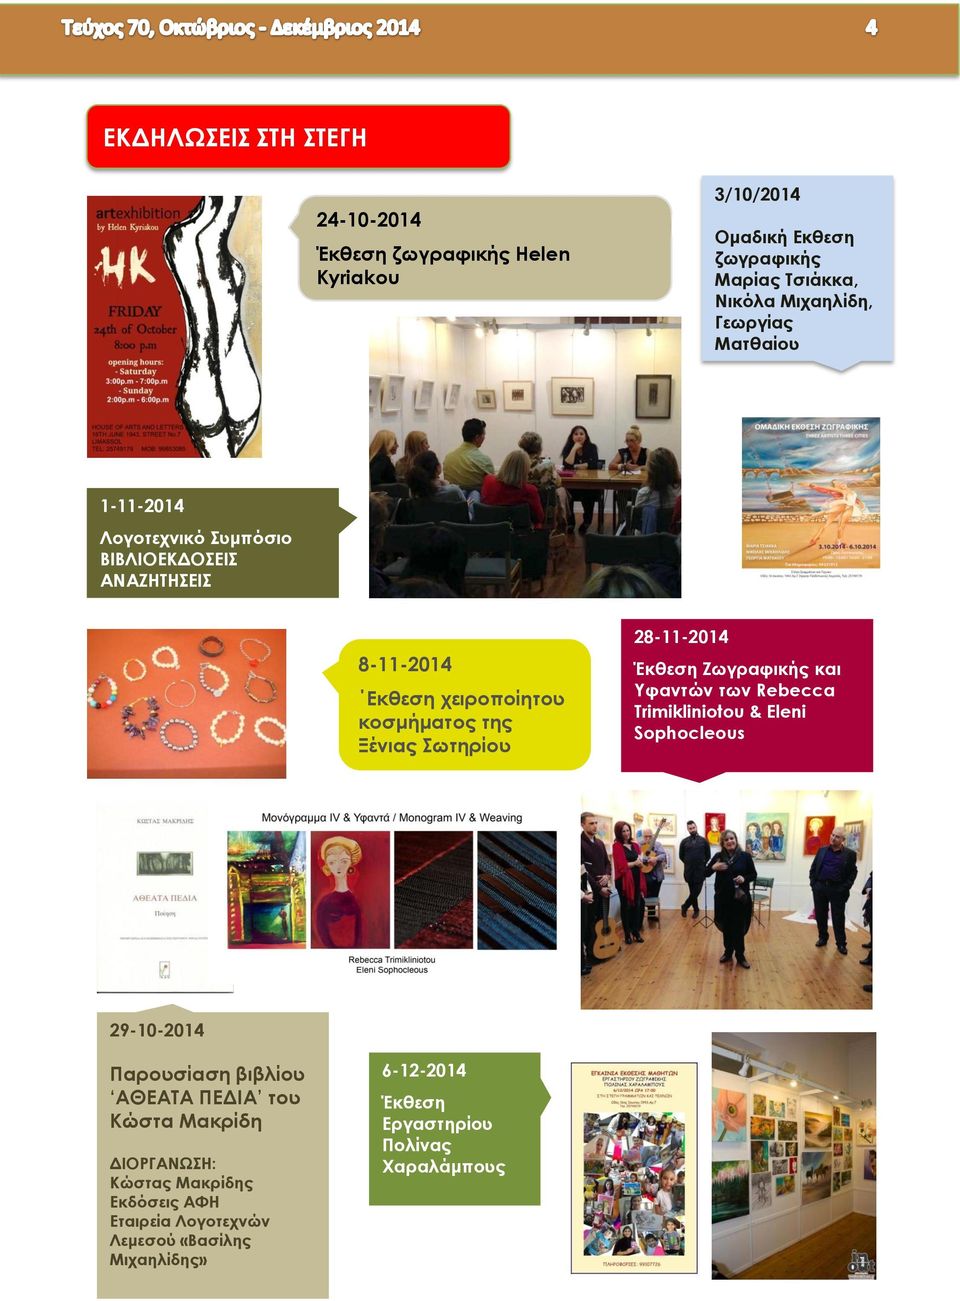 28-11-2014 Έκθεση Zωγραφικής και Yφαντών των Rebecca Trimikliniotou & Eleni Sophocleous 29-10-2014 Παρουσίαση βιβλίου ΑΘΕΑΤΑ ΠΕΔΙΑ του